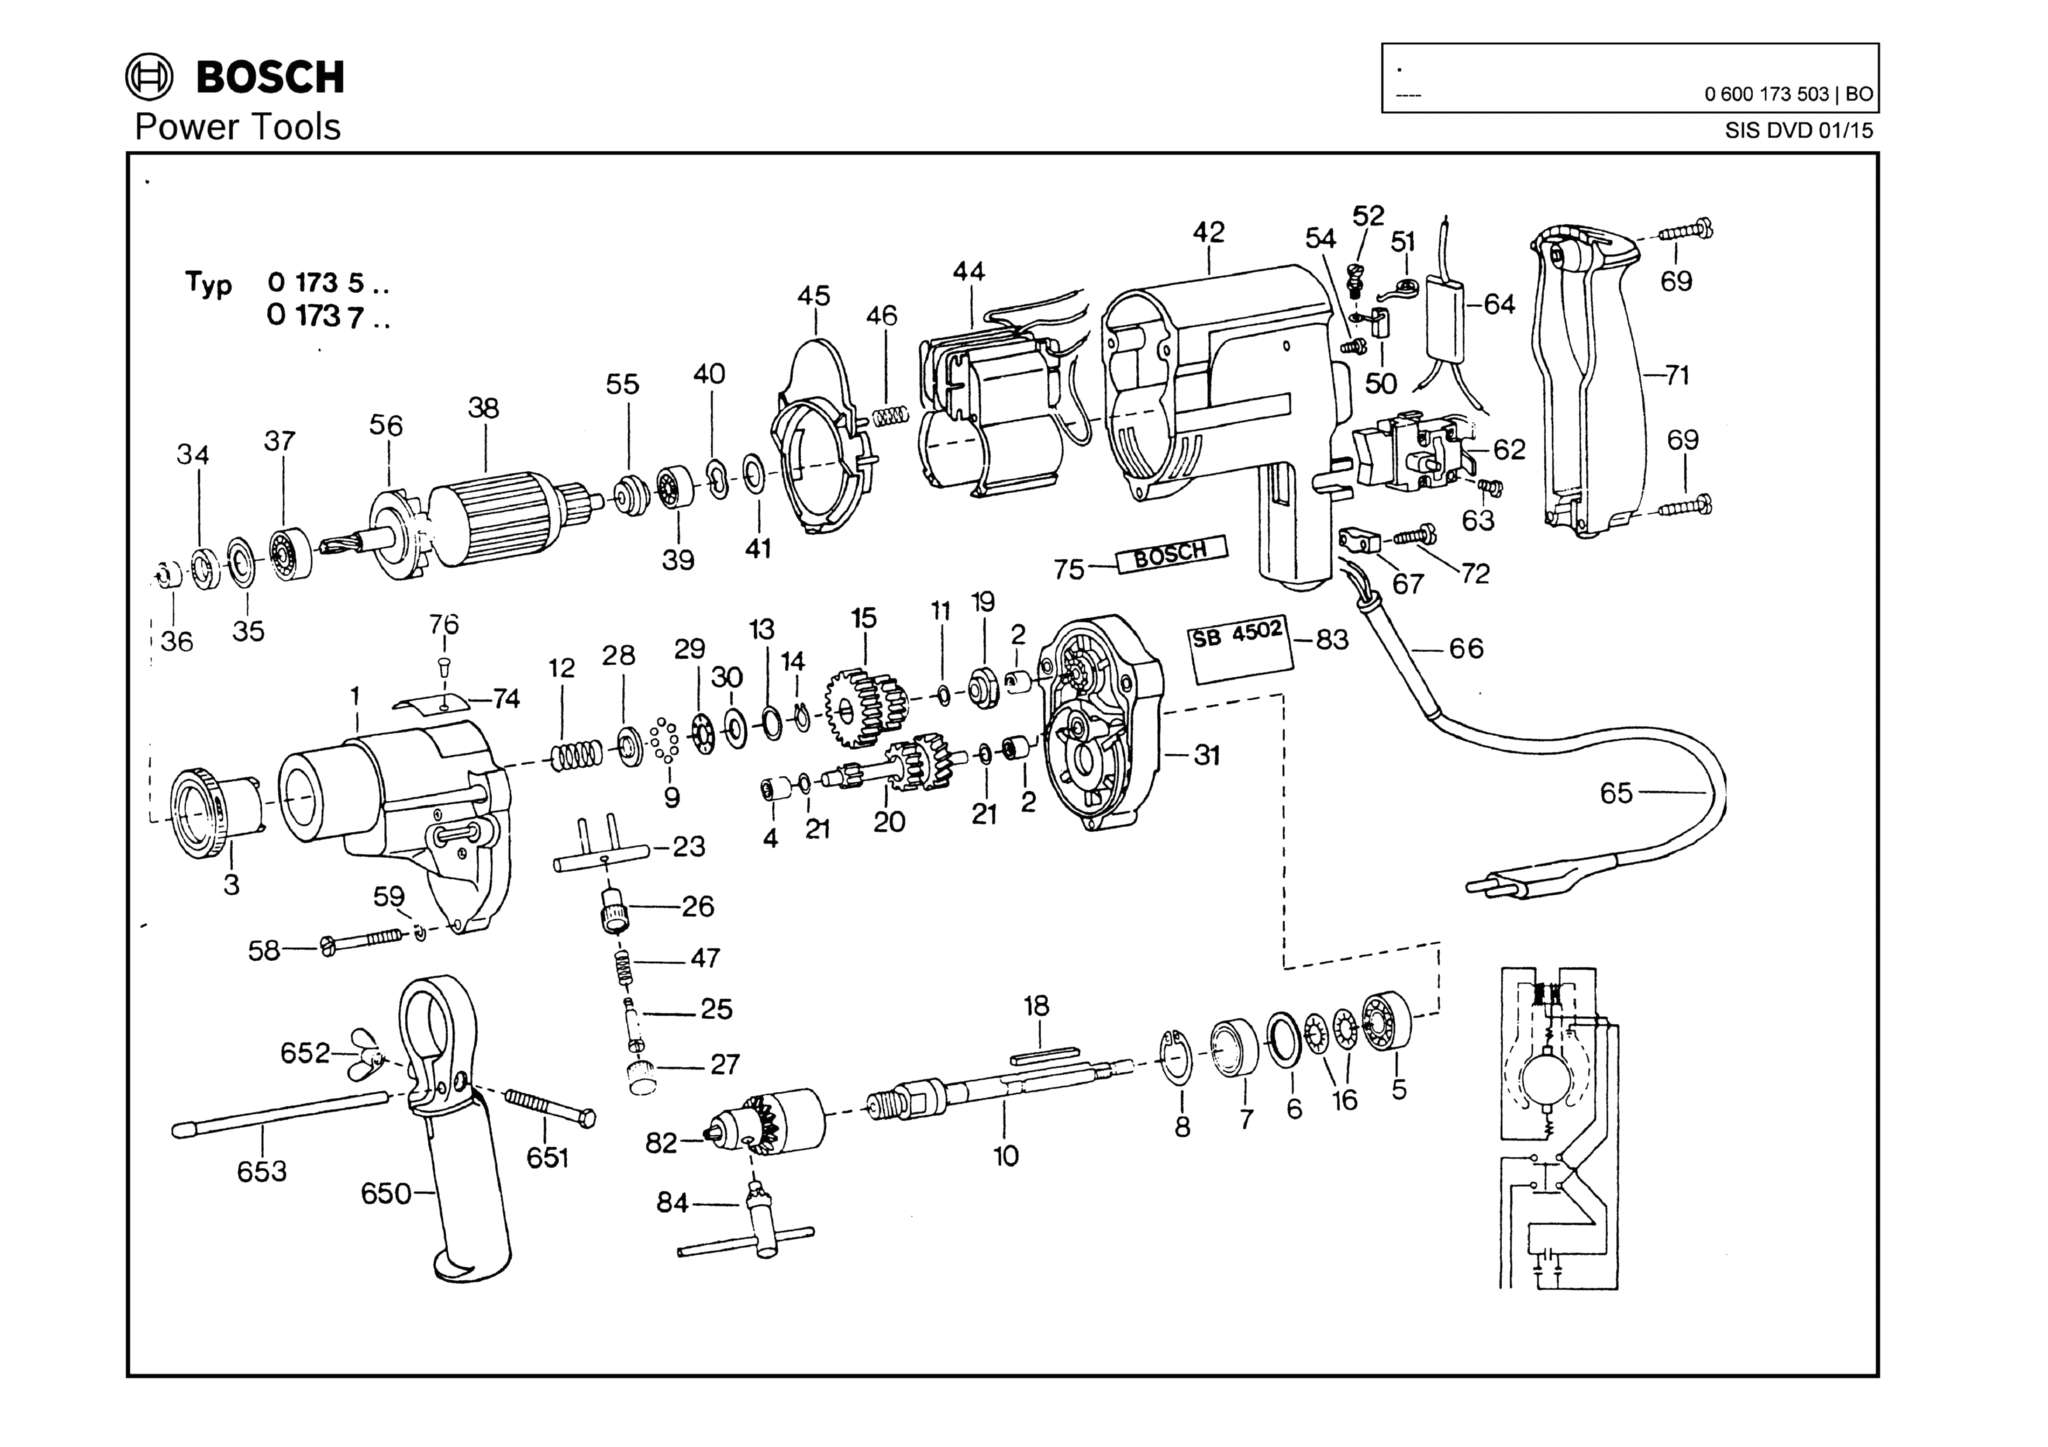 Запчасти, схема и деталировка Bosch (ТИП 0600173503)